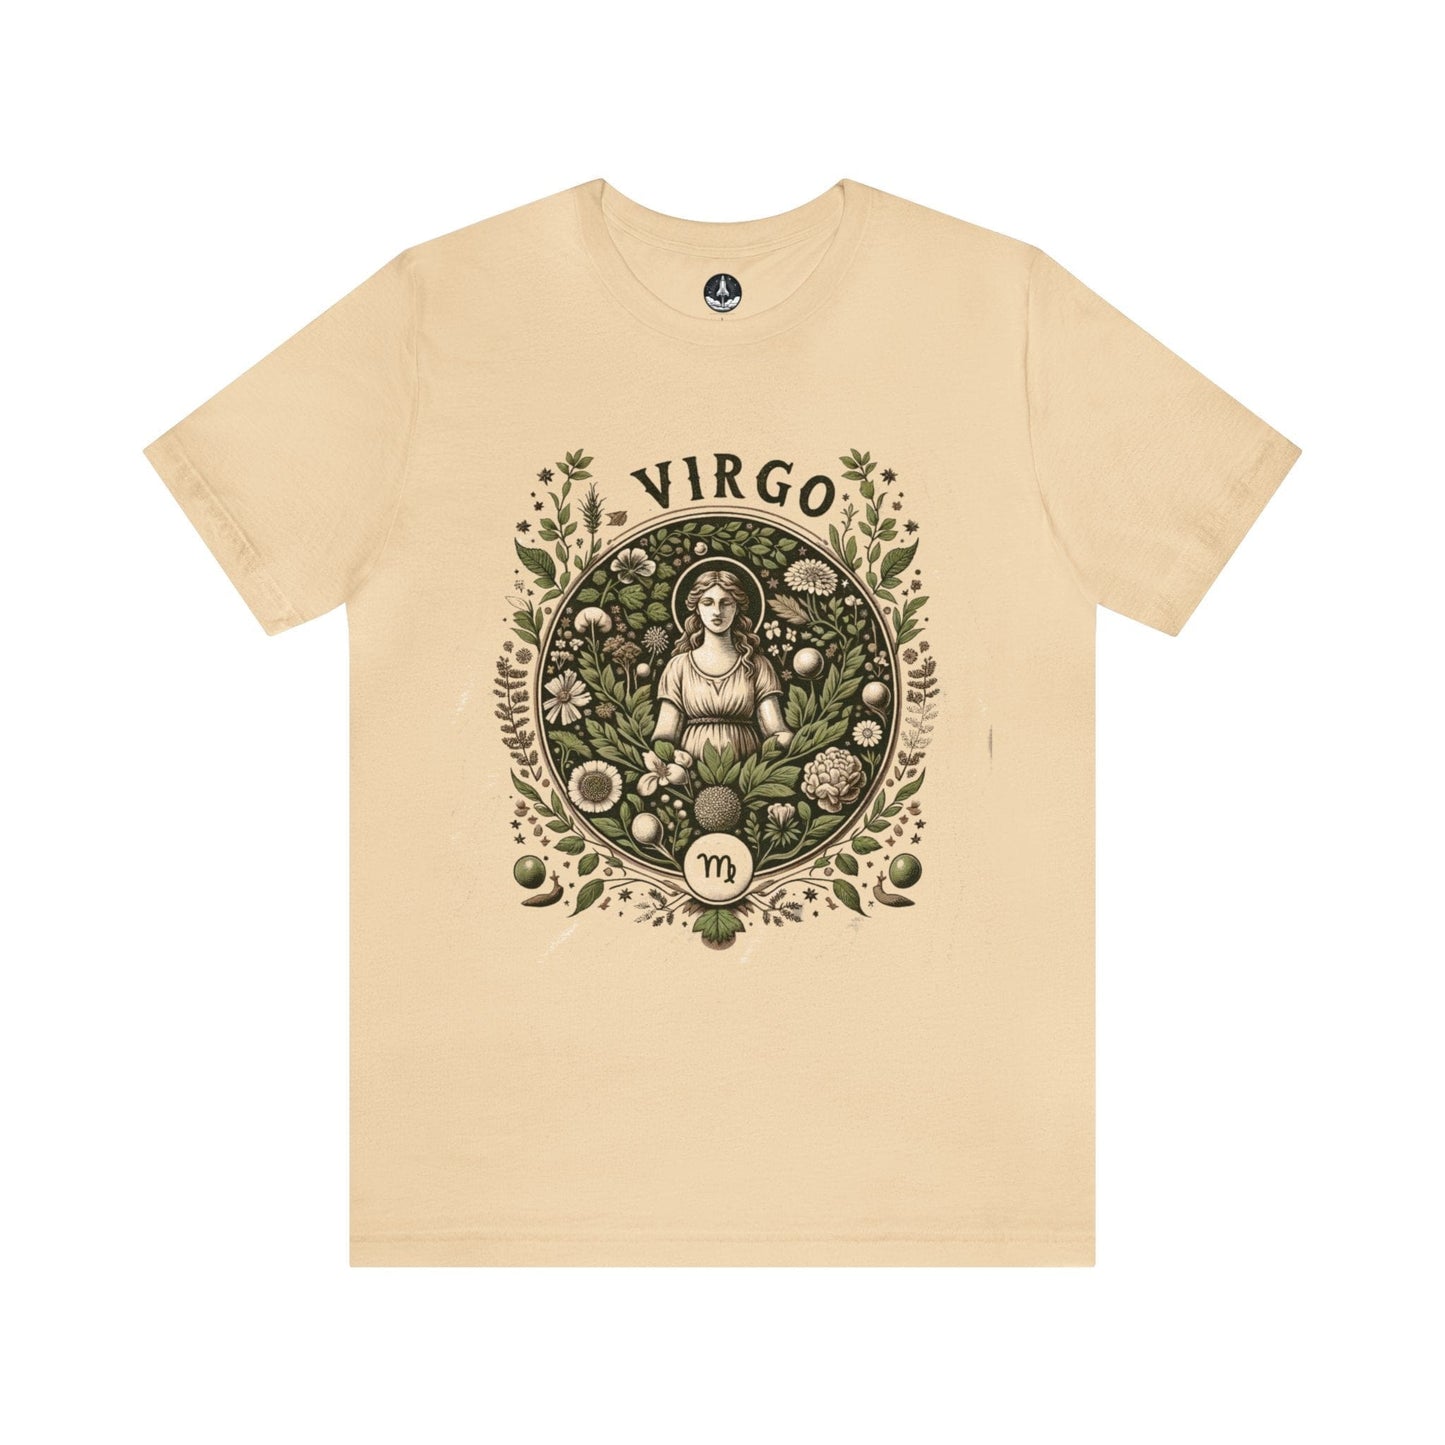 T-Shirt Soft Cream / S Herbalist's Dream: The Botanical Virgo T-Shirt